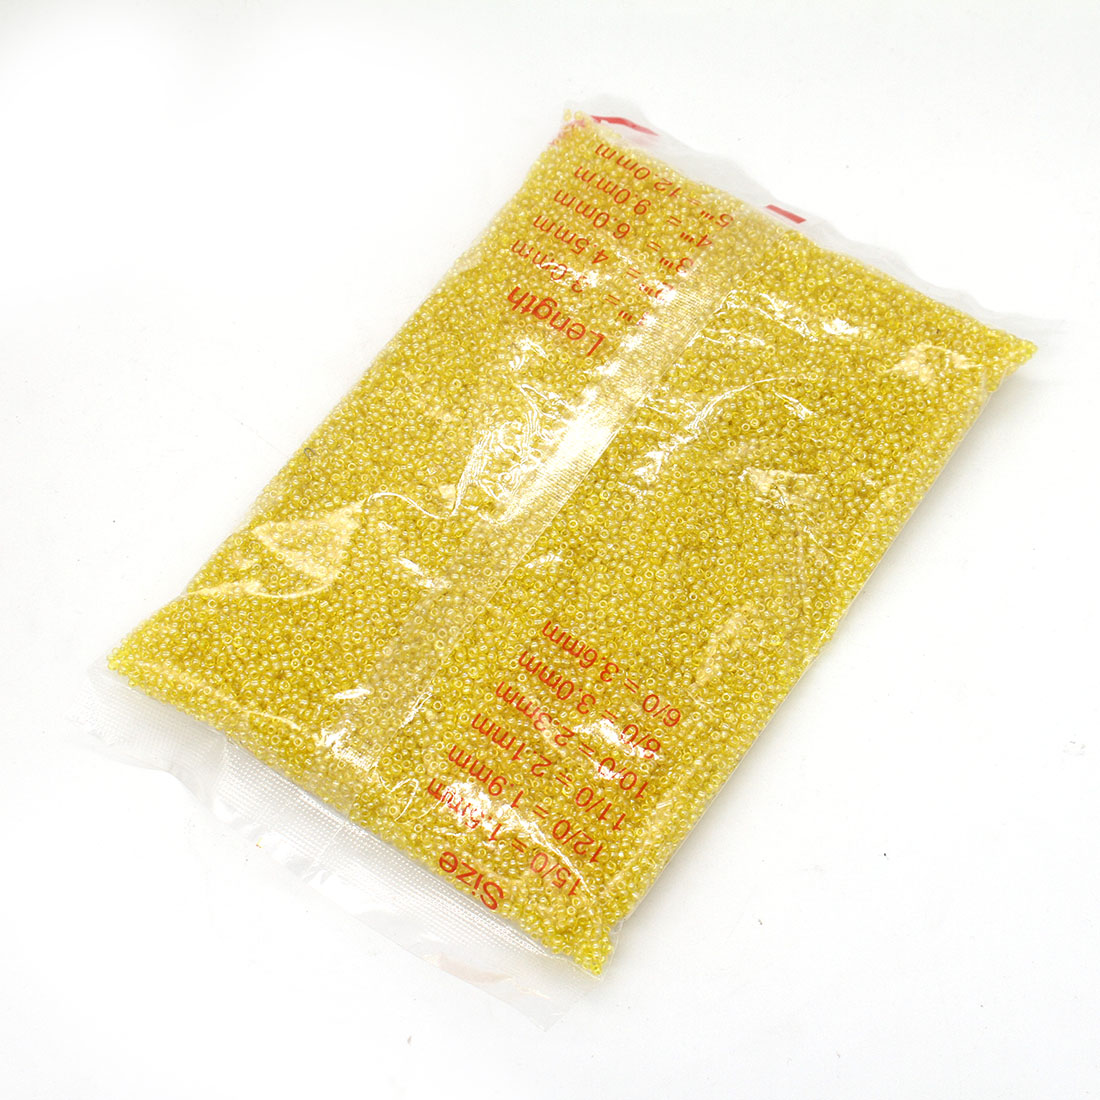 Lemon yellow 2mm 30,000 packs